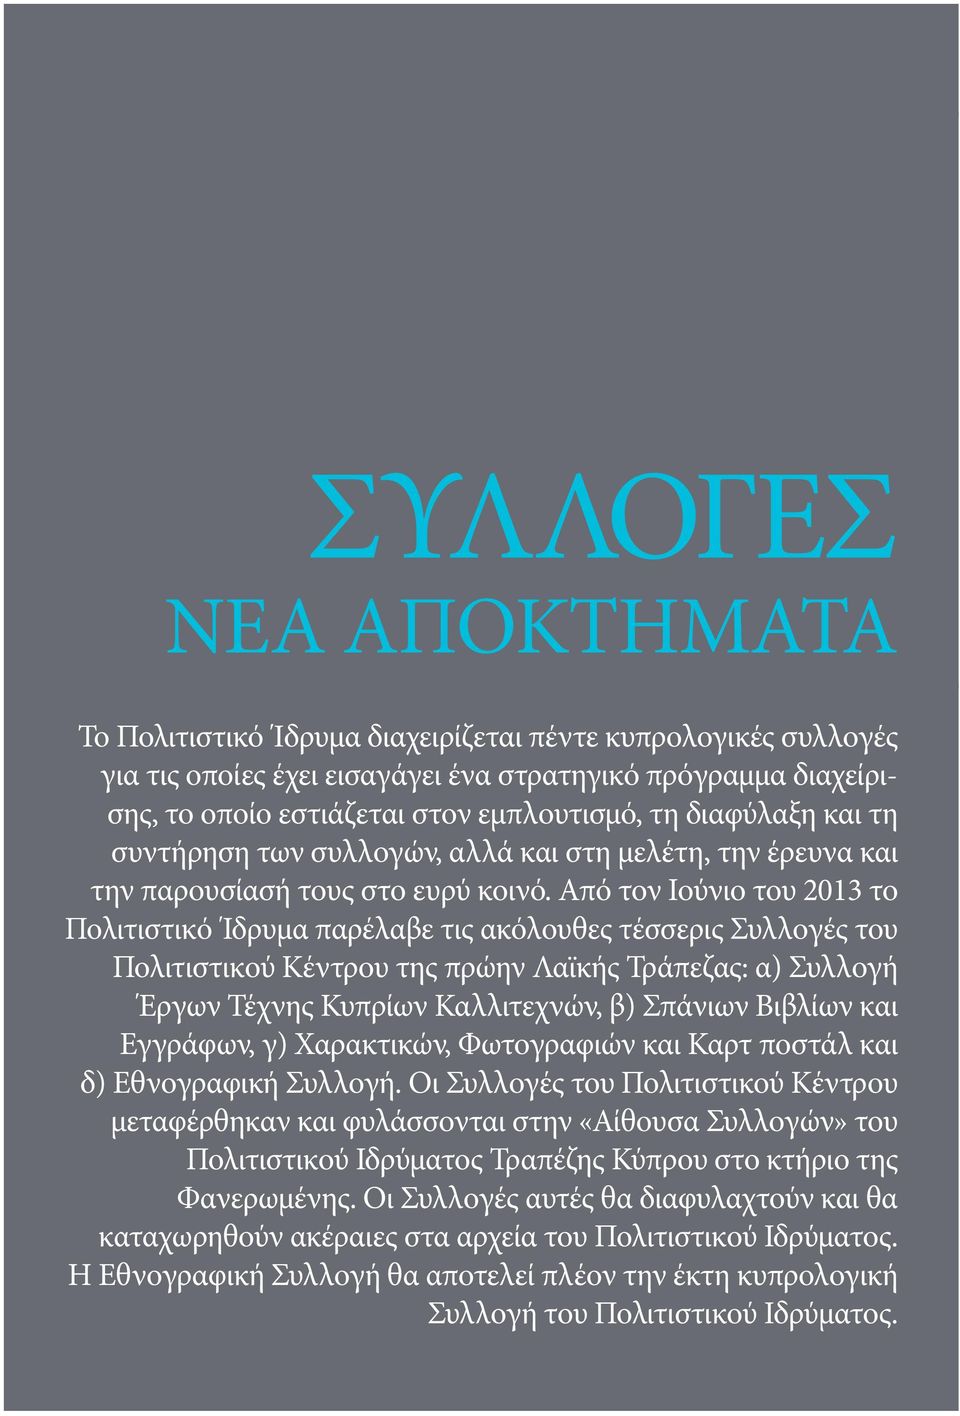 Από τον Ιούνιο του 2013 το Πολιτιστικό Ίδρυμα παρέλαβε τις ακόλουθες τέσσερις Συλλογές του Πολιτιστικού Κέντρου της πρώην Λαϊκής Τράπεζας: α) Συλλογή Έργων Τέχνης Κυπρίων Καλλιτεχνών, β) Σπάνιων